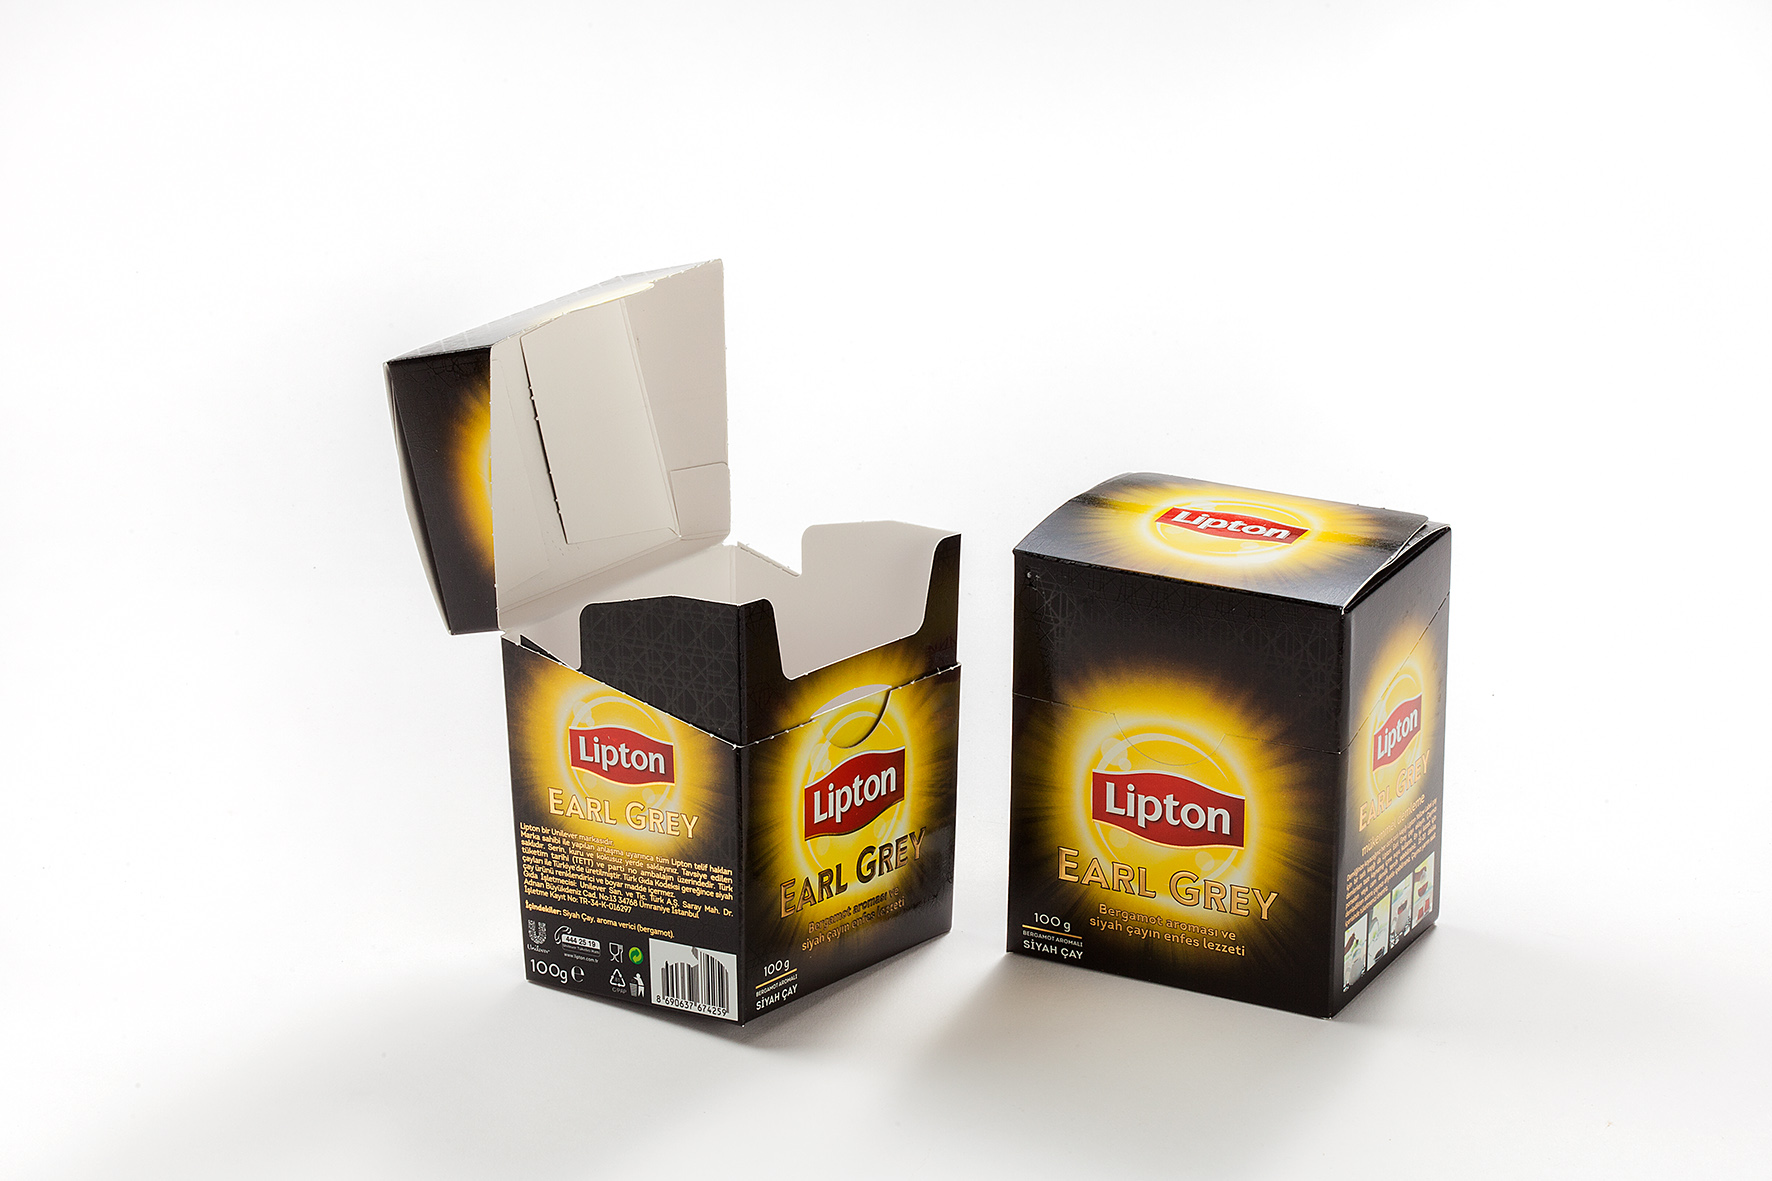 Lipton Earl Grey 100 g Carton